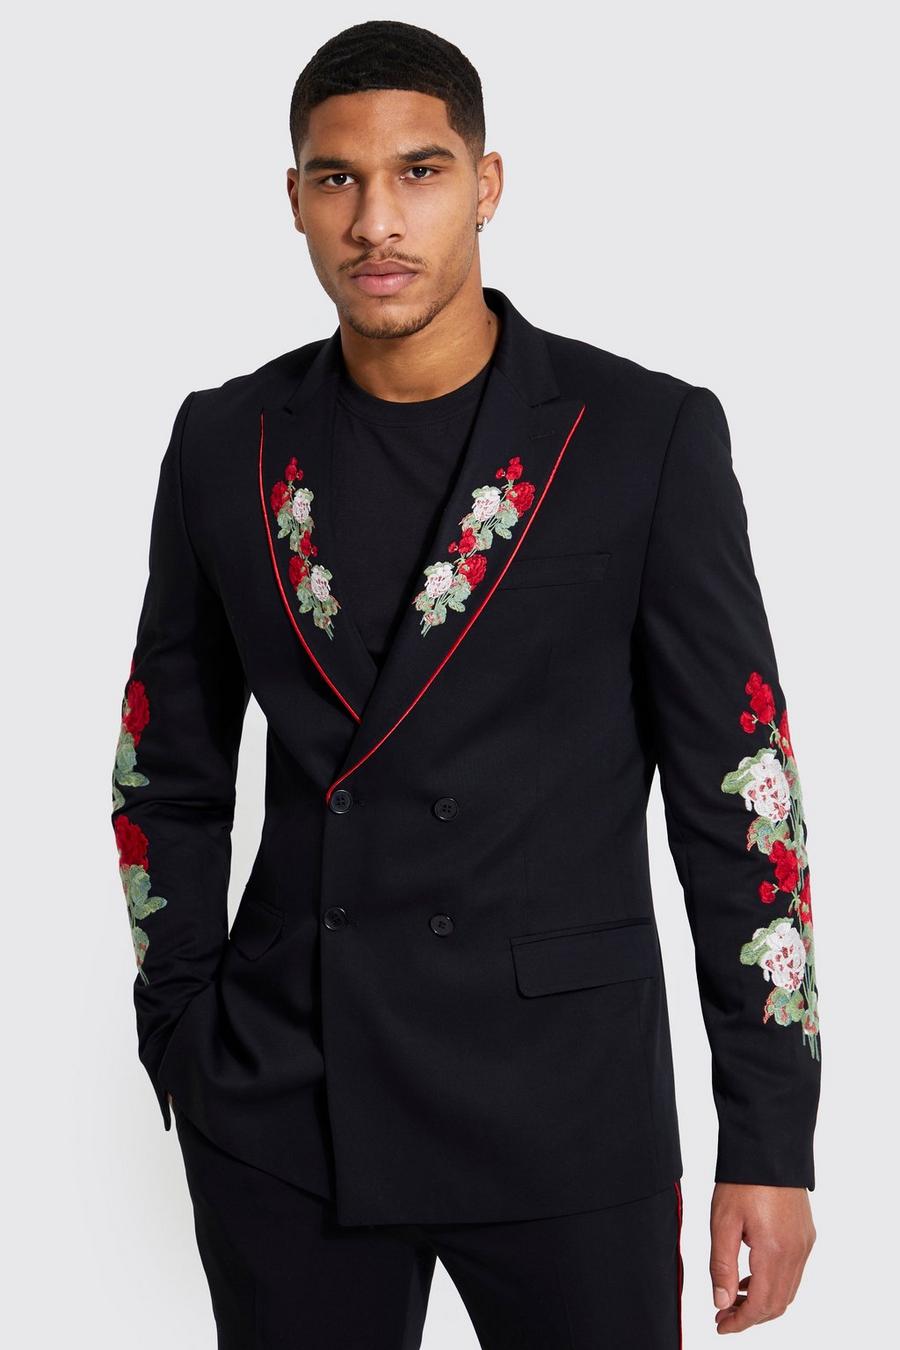 שחור negro ז'קט חליפה פרחוני עם דשים כפולים, לגברים גבוהים